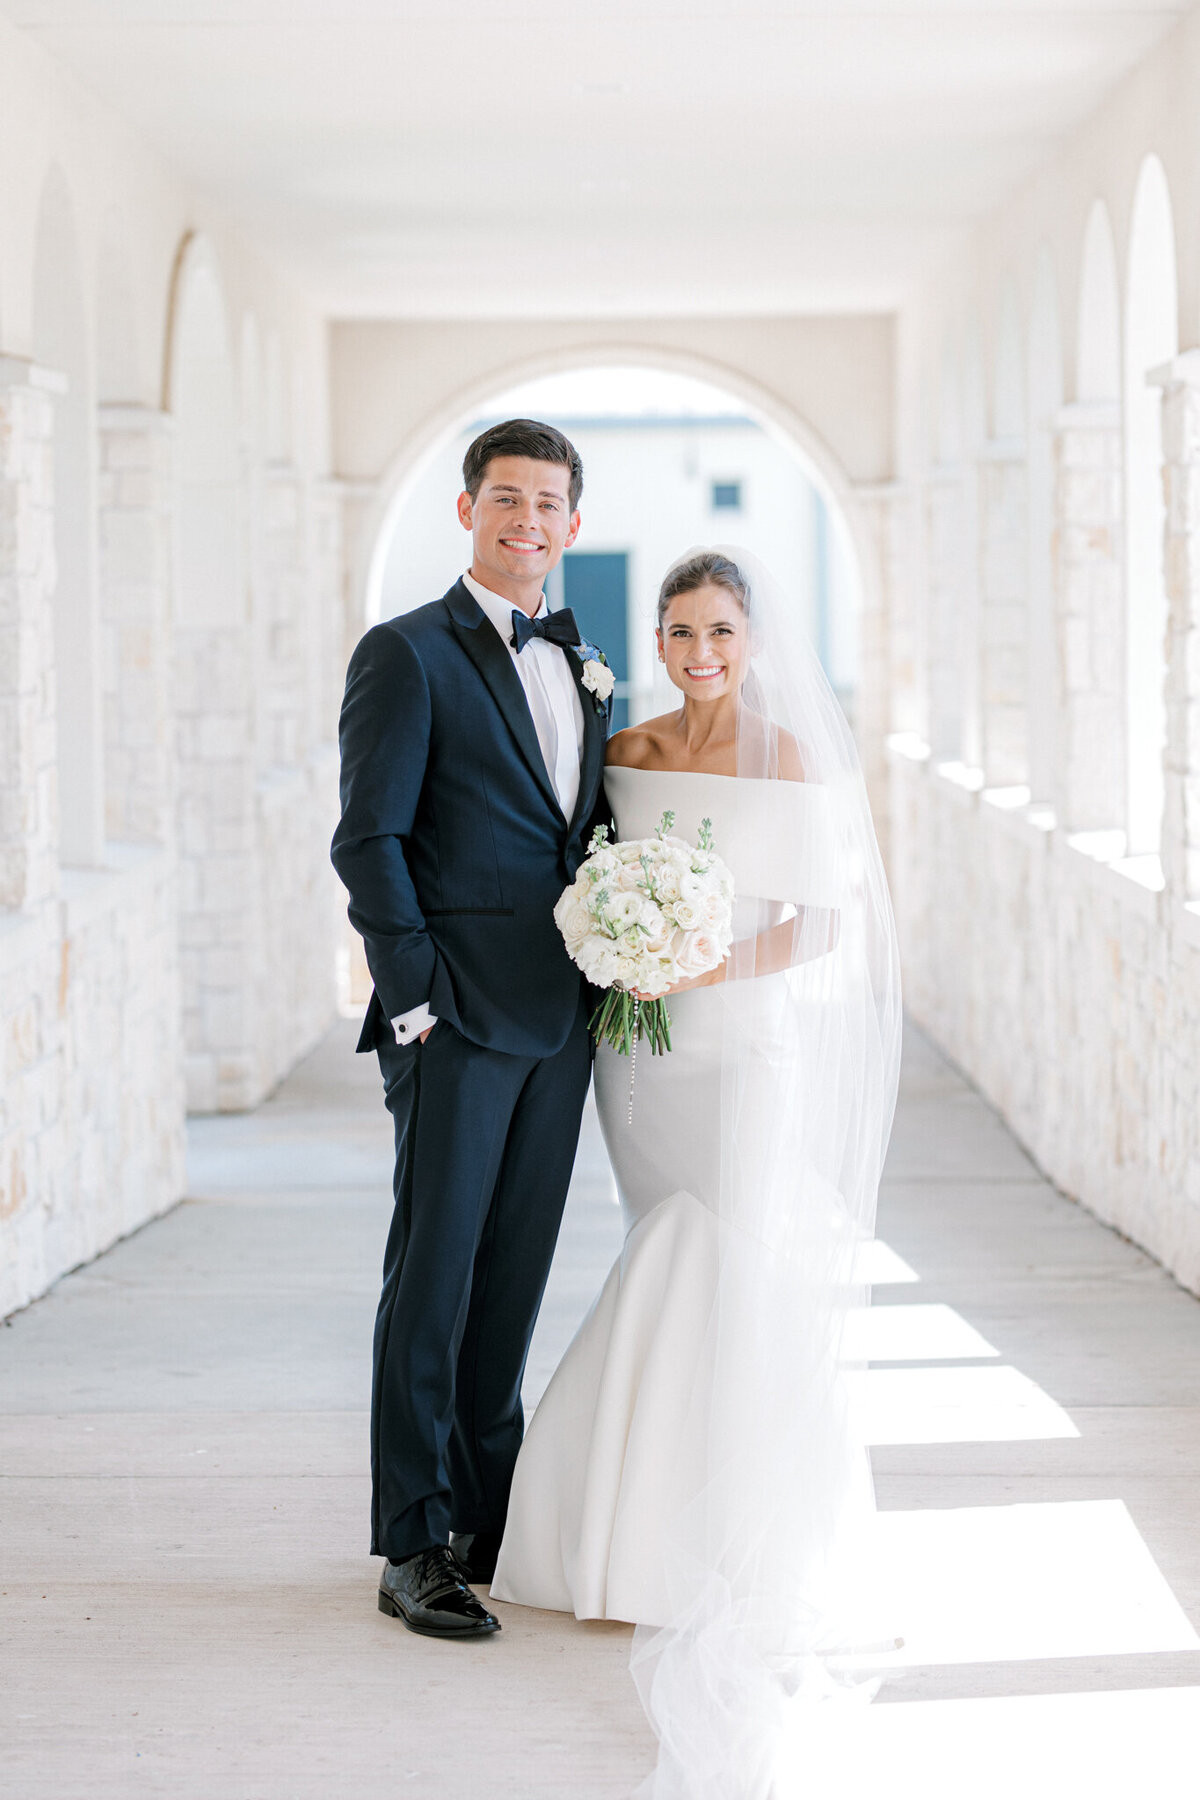 Annie & Logan's Wedding | Dallas Wedding Photographer | Sami Kathryn Photography-130